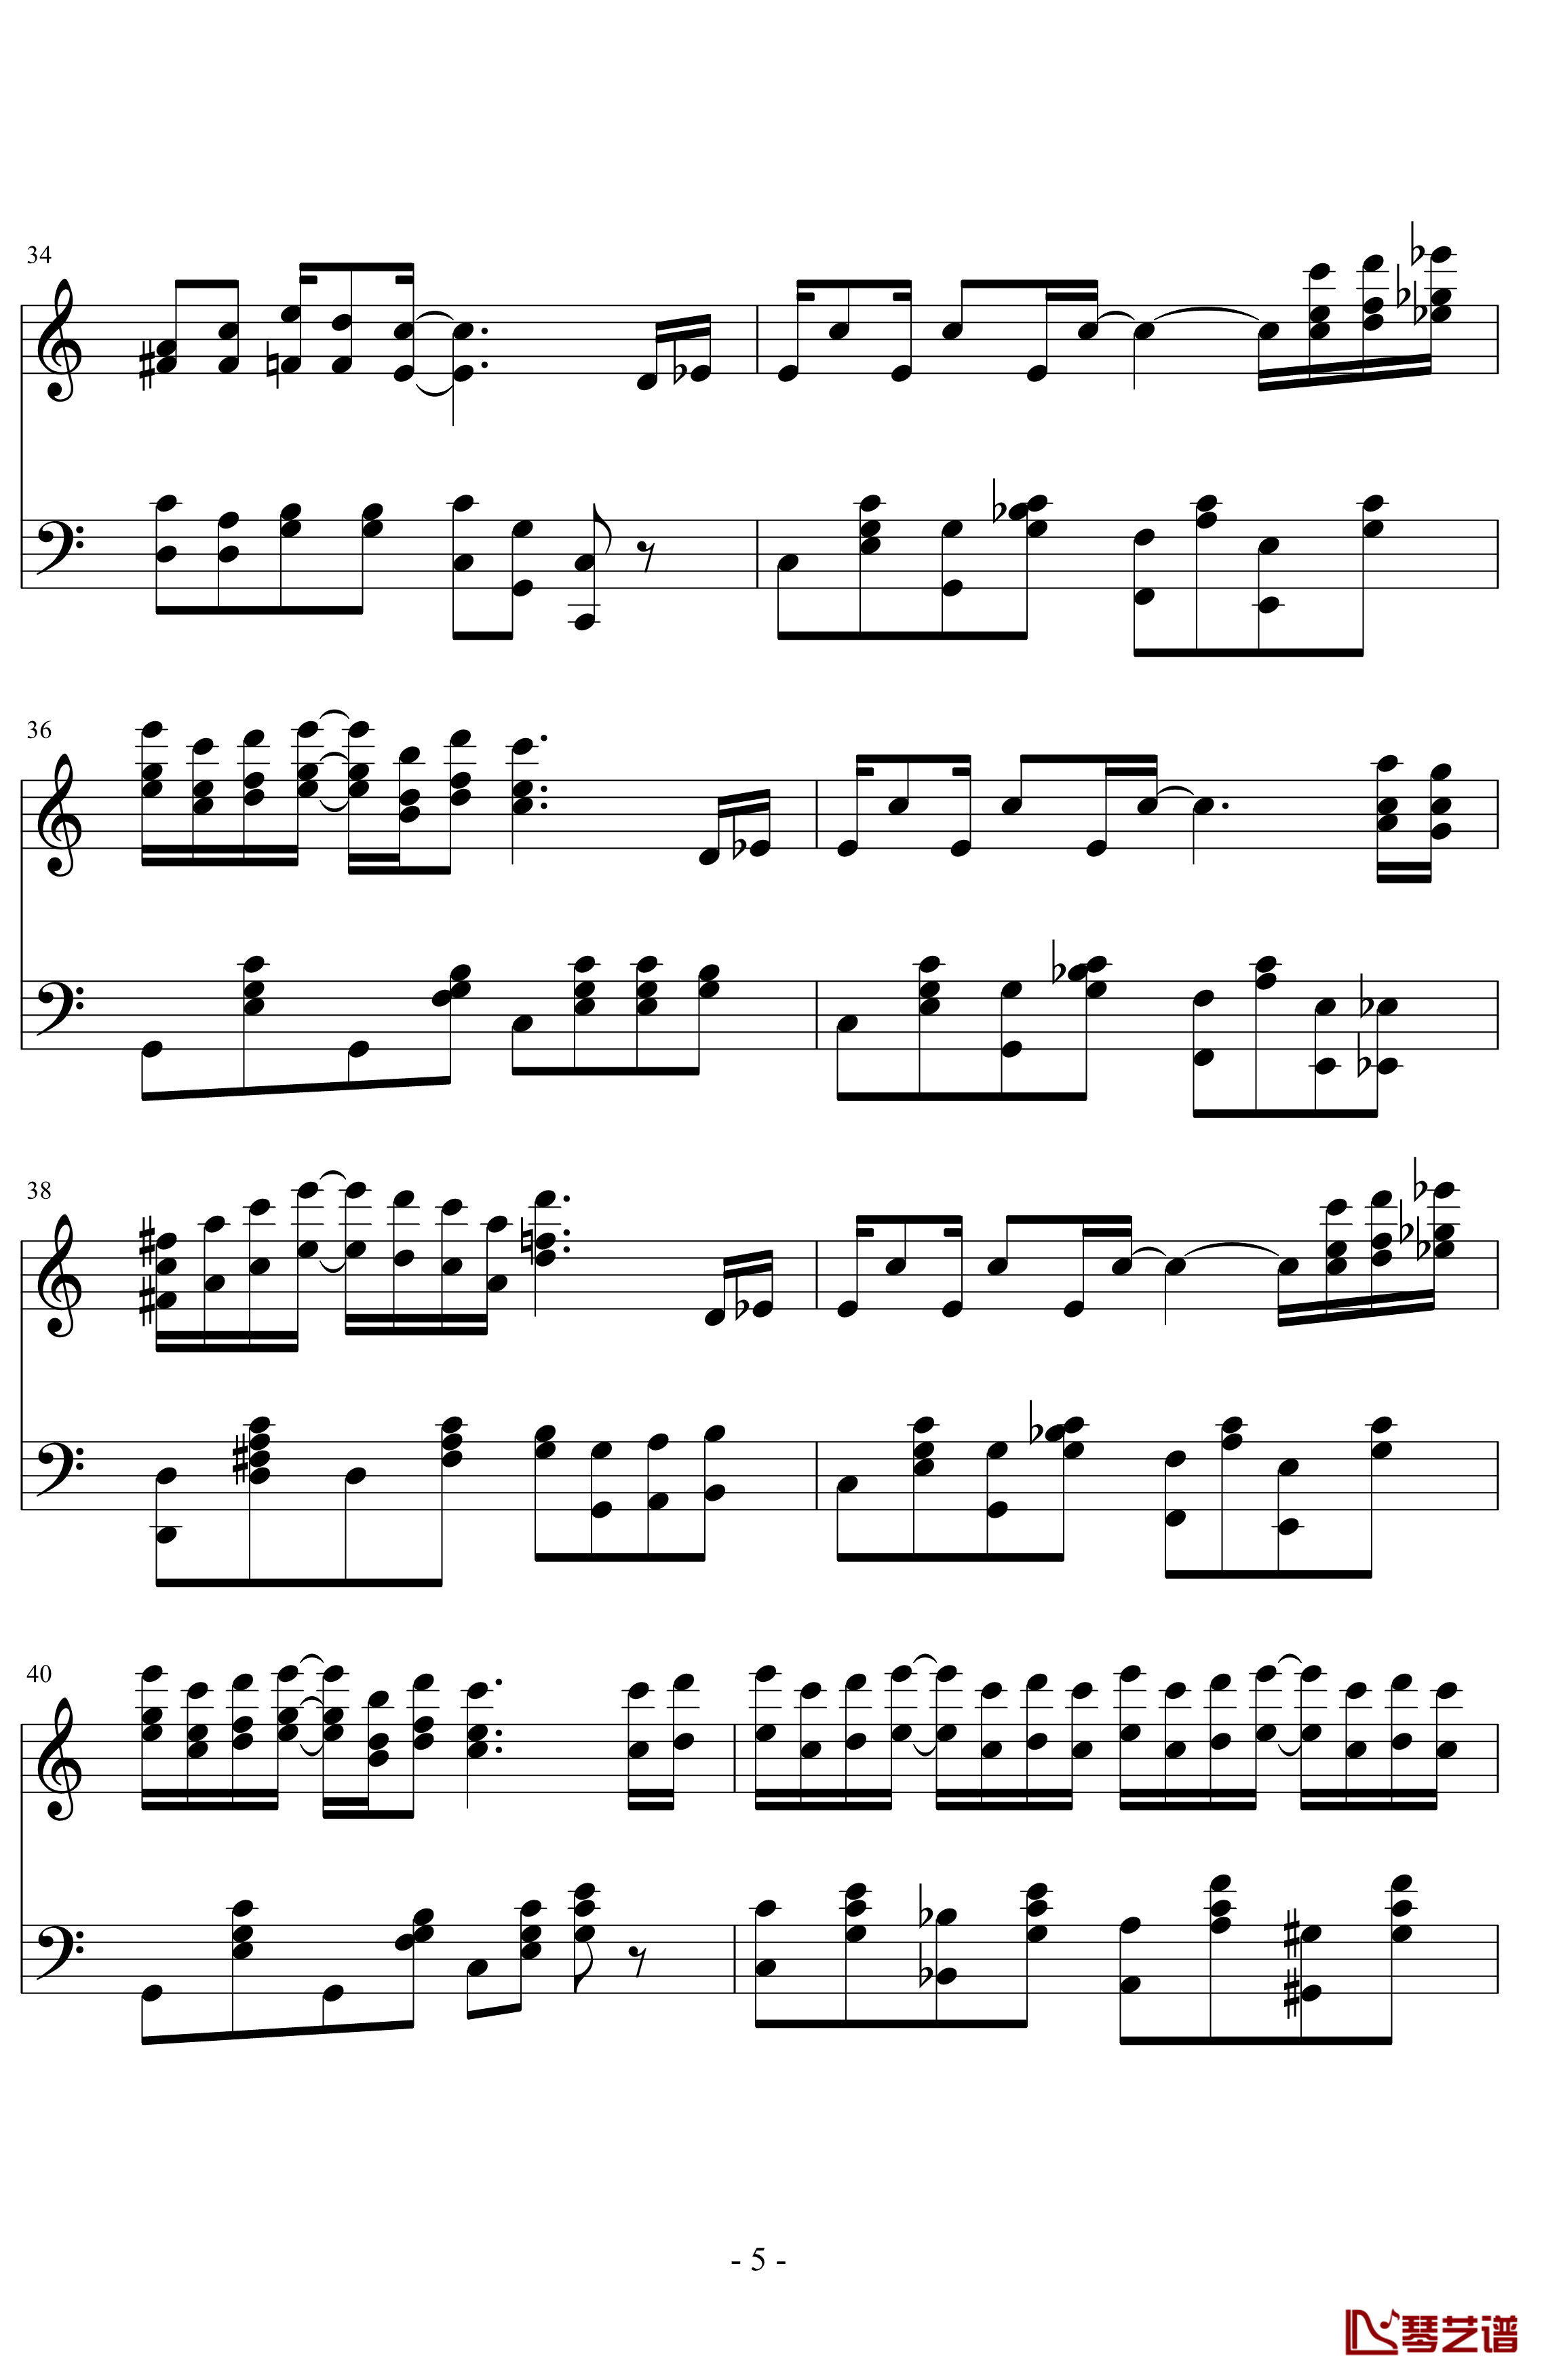 the entertainer钢琴谱-完整版-拉格泰姆-Scott Joplin5